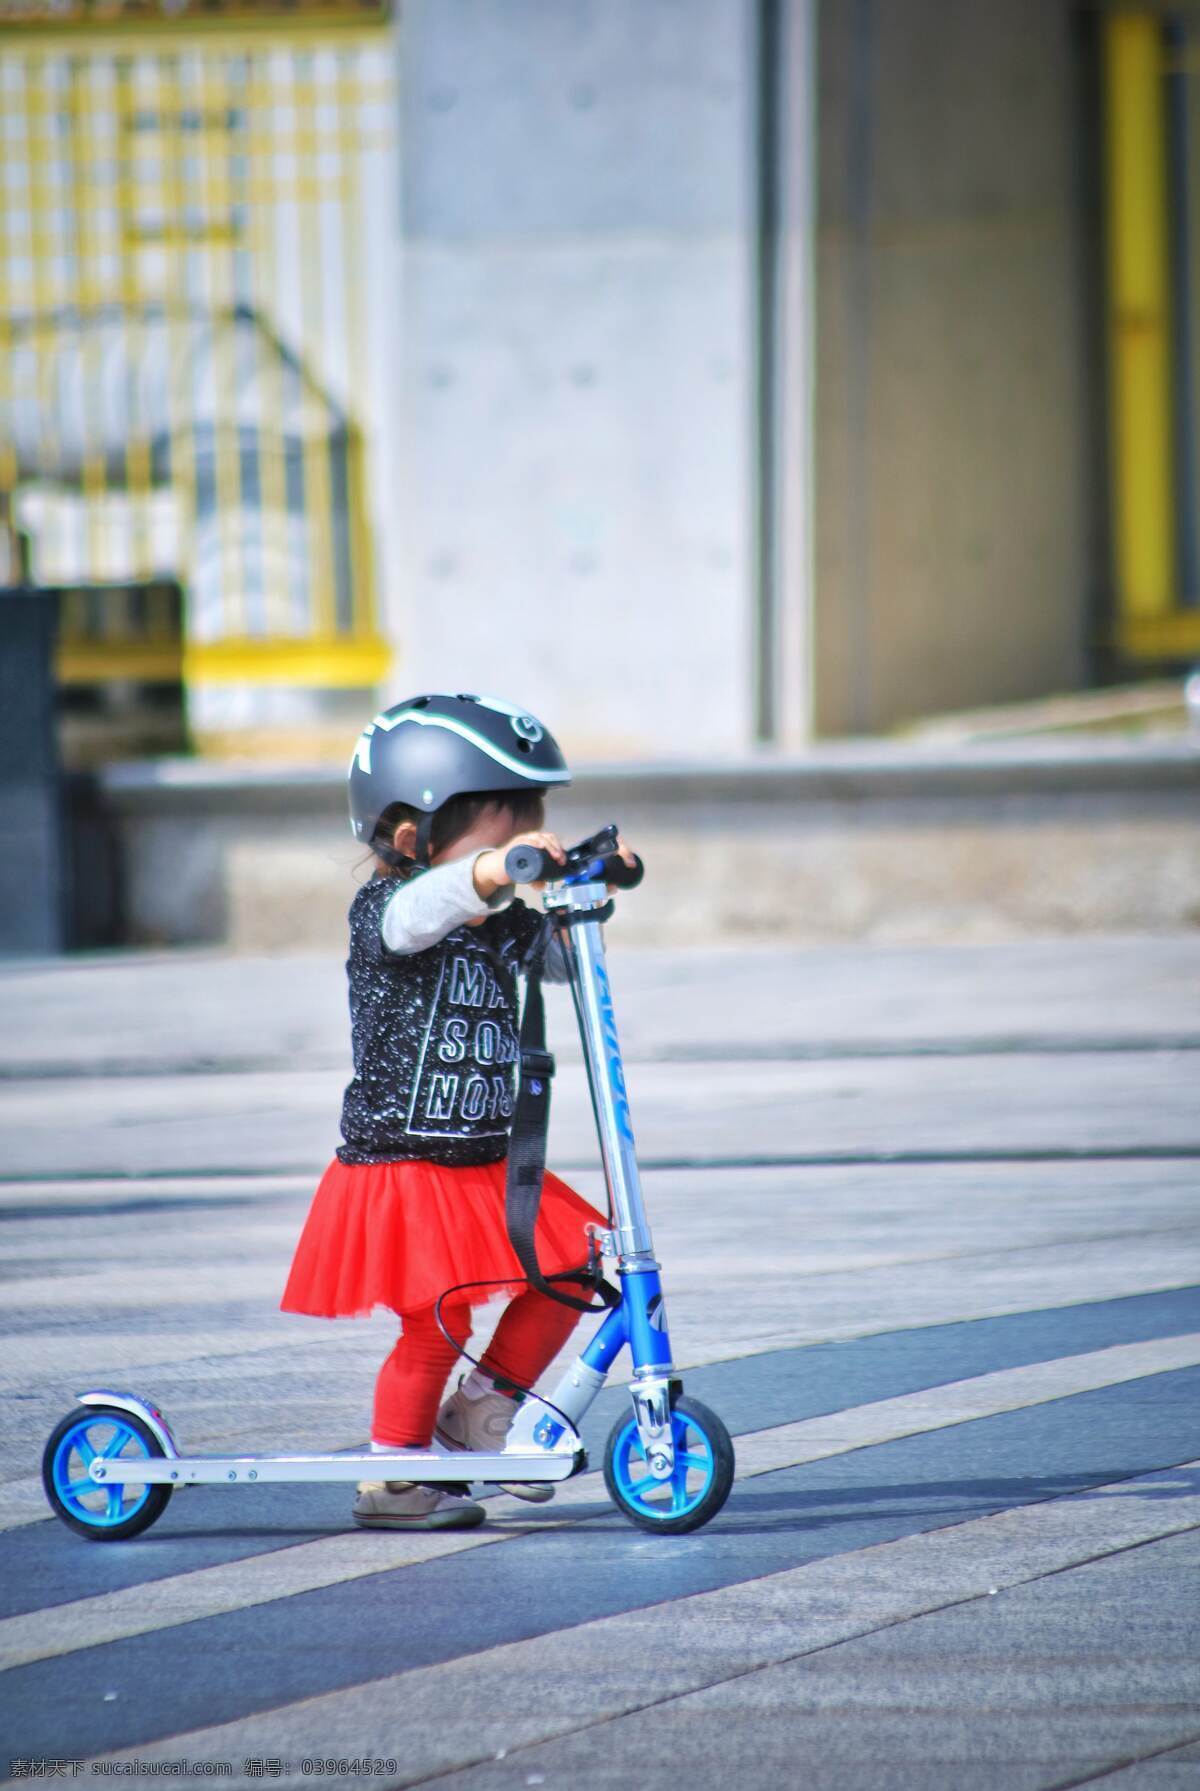 国外 可爱 嬉闹 儿童 小孩 高清 品质 设计用图 女孩 滑板车 红色 儿童人物摄影 人物图库 儿童幼儿